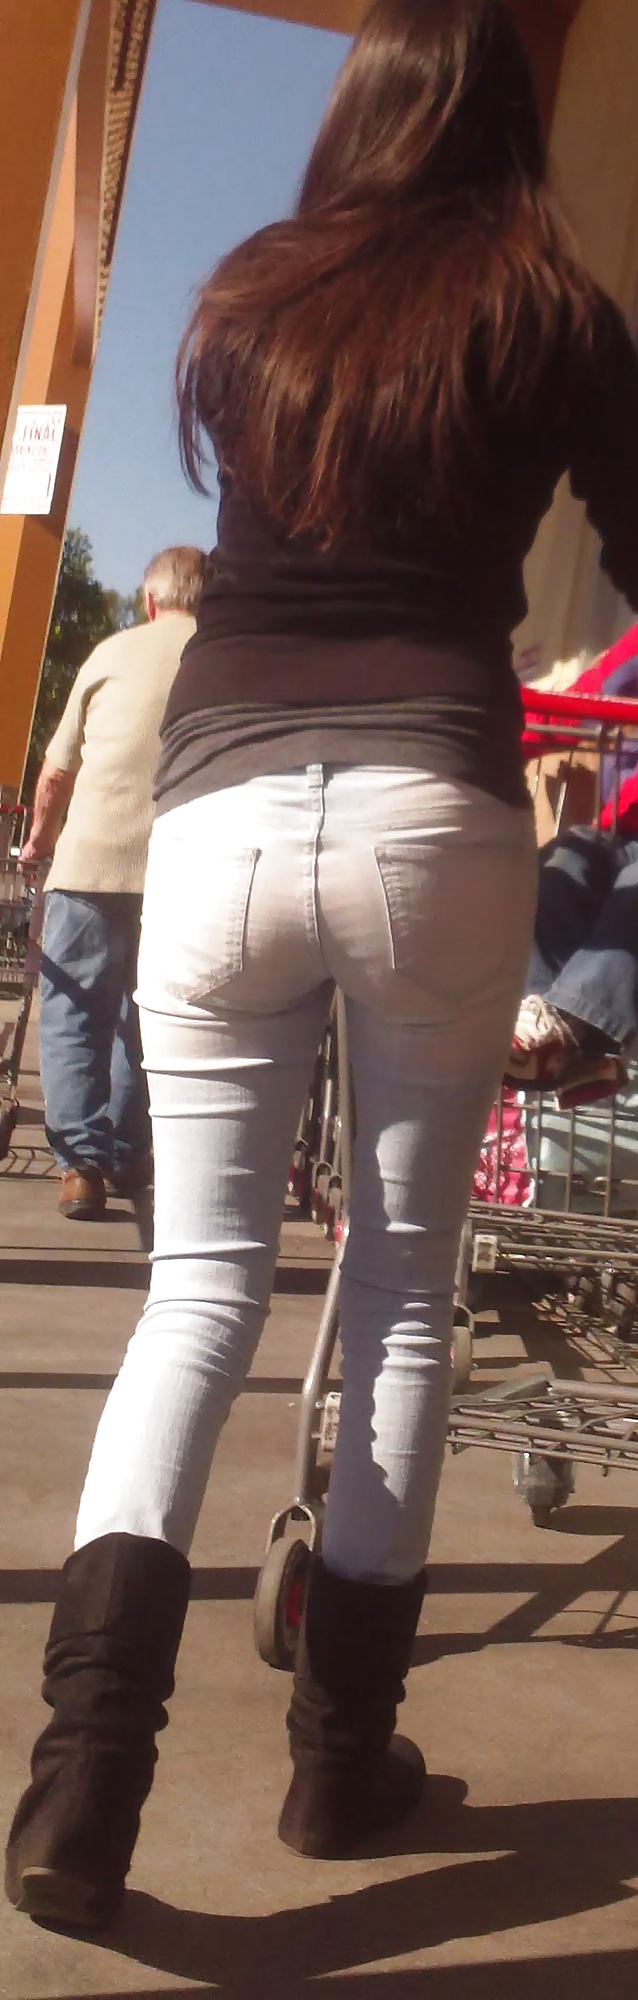 Popular teen girls ass & butt in jeans Part 6 #32009677